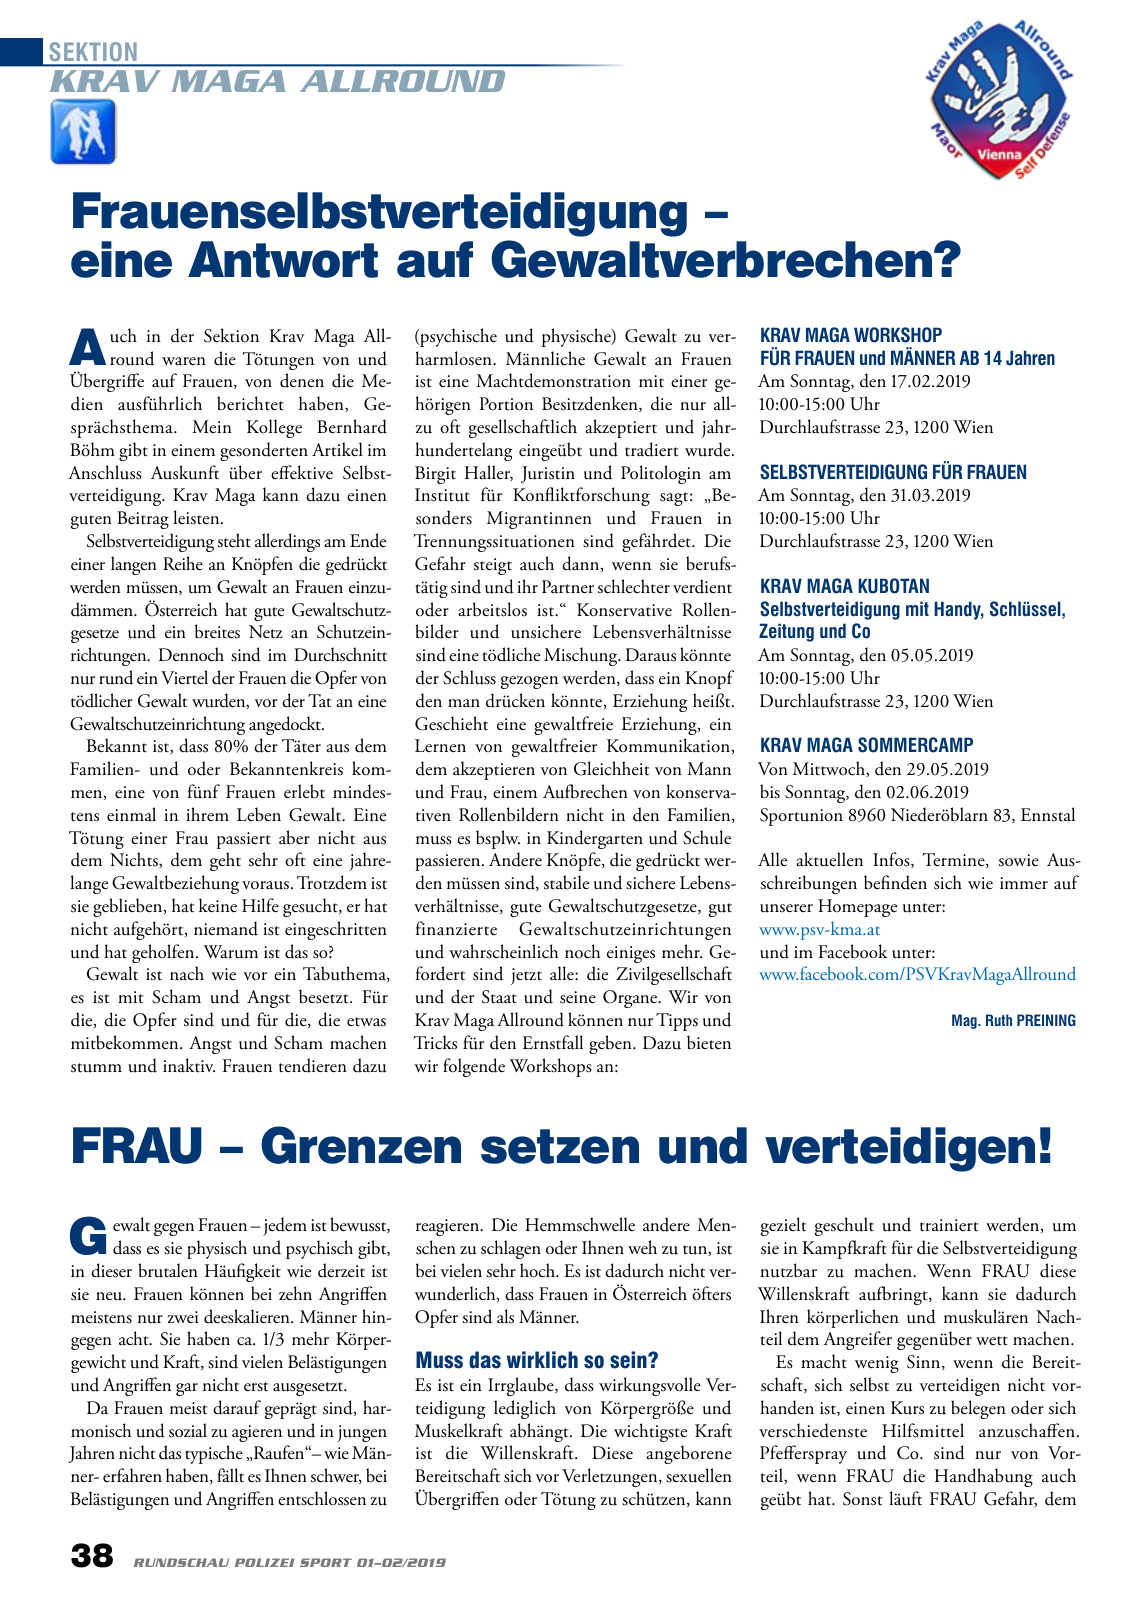 Vorschau Rundschau Polizei Sport 01-02/2019 Seite 38